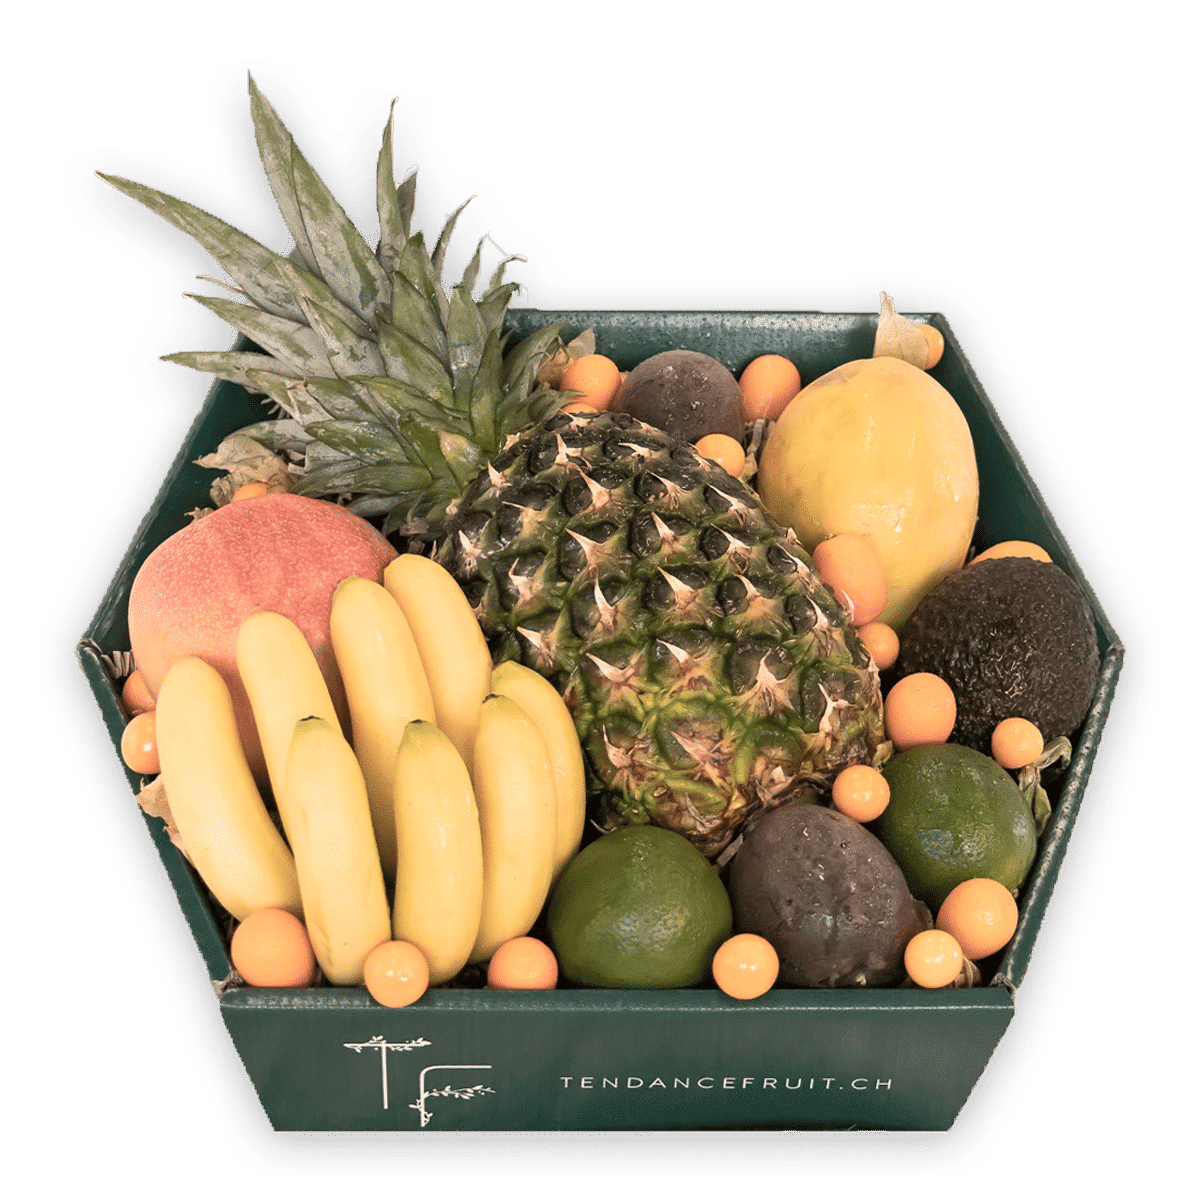 L'ananas : fruit exotique aux vertus nutritionnelles